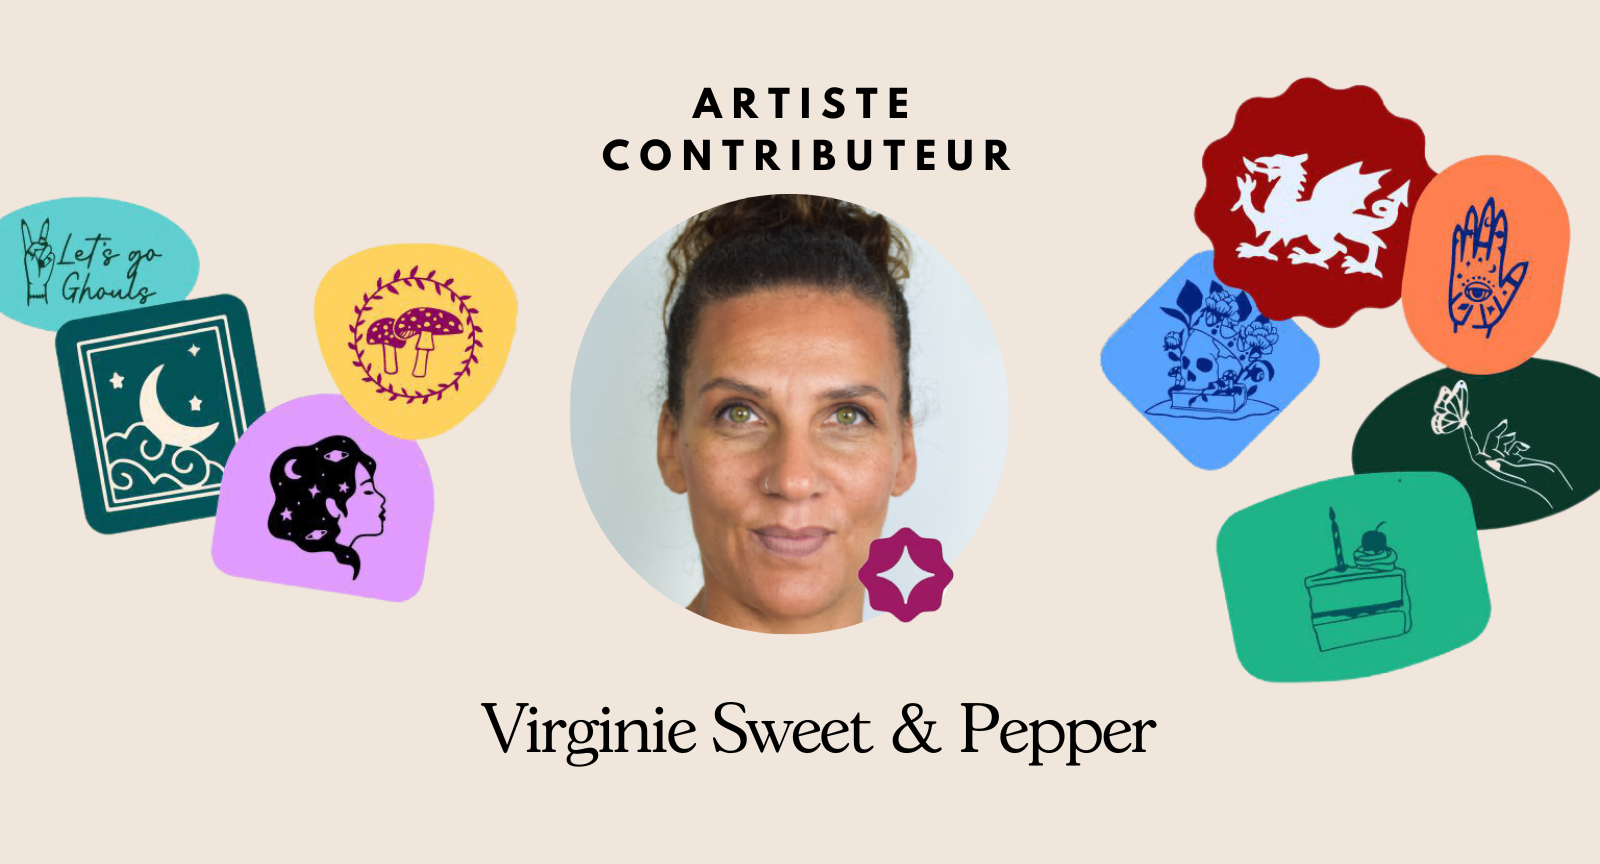 Artistes Contributeurs Cricut - Virginie Sweet & Pepper